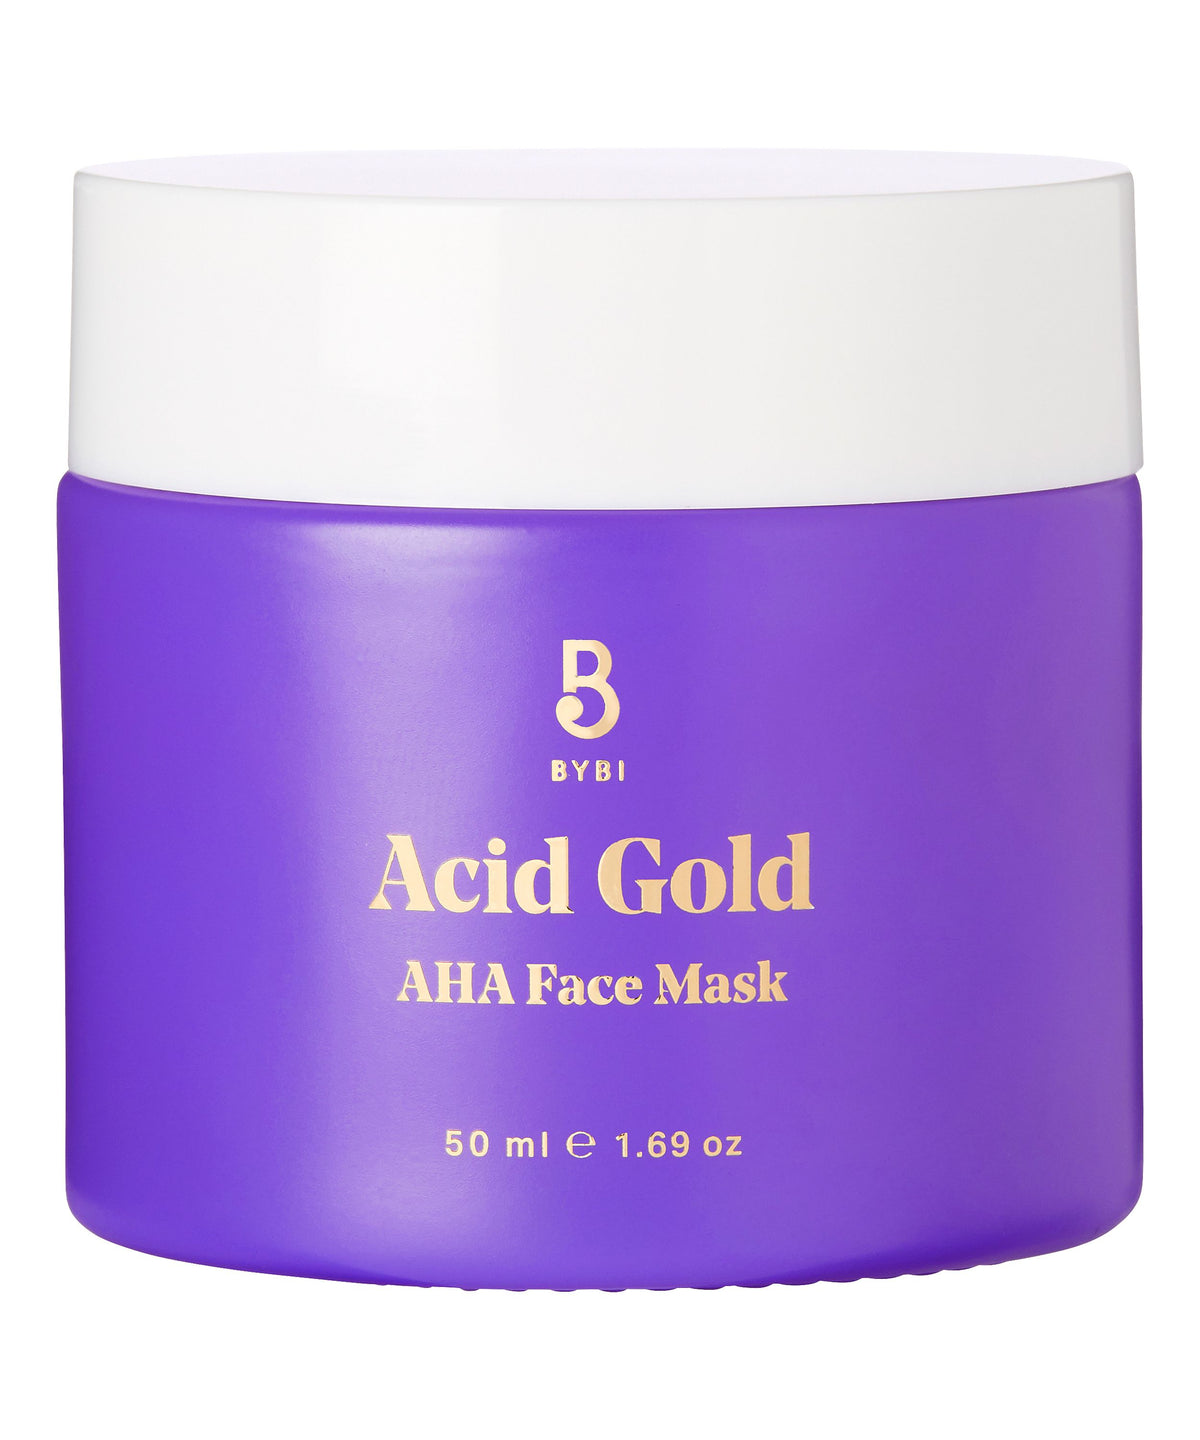 Bybi Beauty Acid Gold AHA Face Mask - Kasvonaamio 50 ml - toimituskatkos, ei tietoa milloin saa lisää